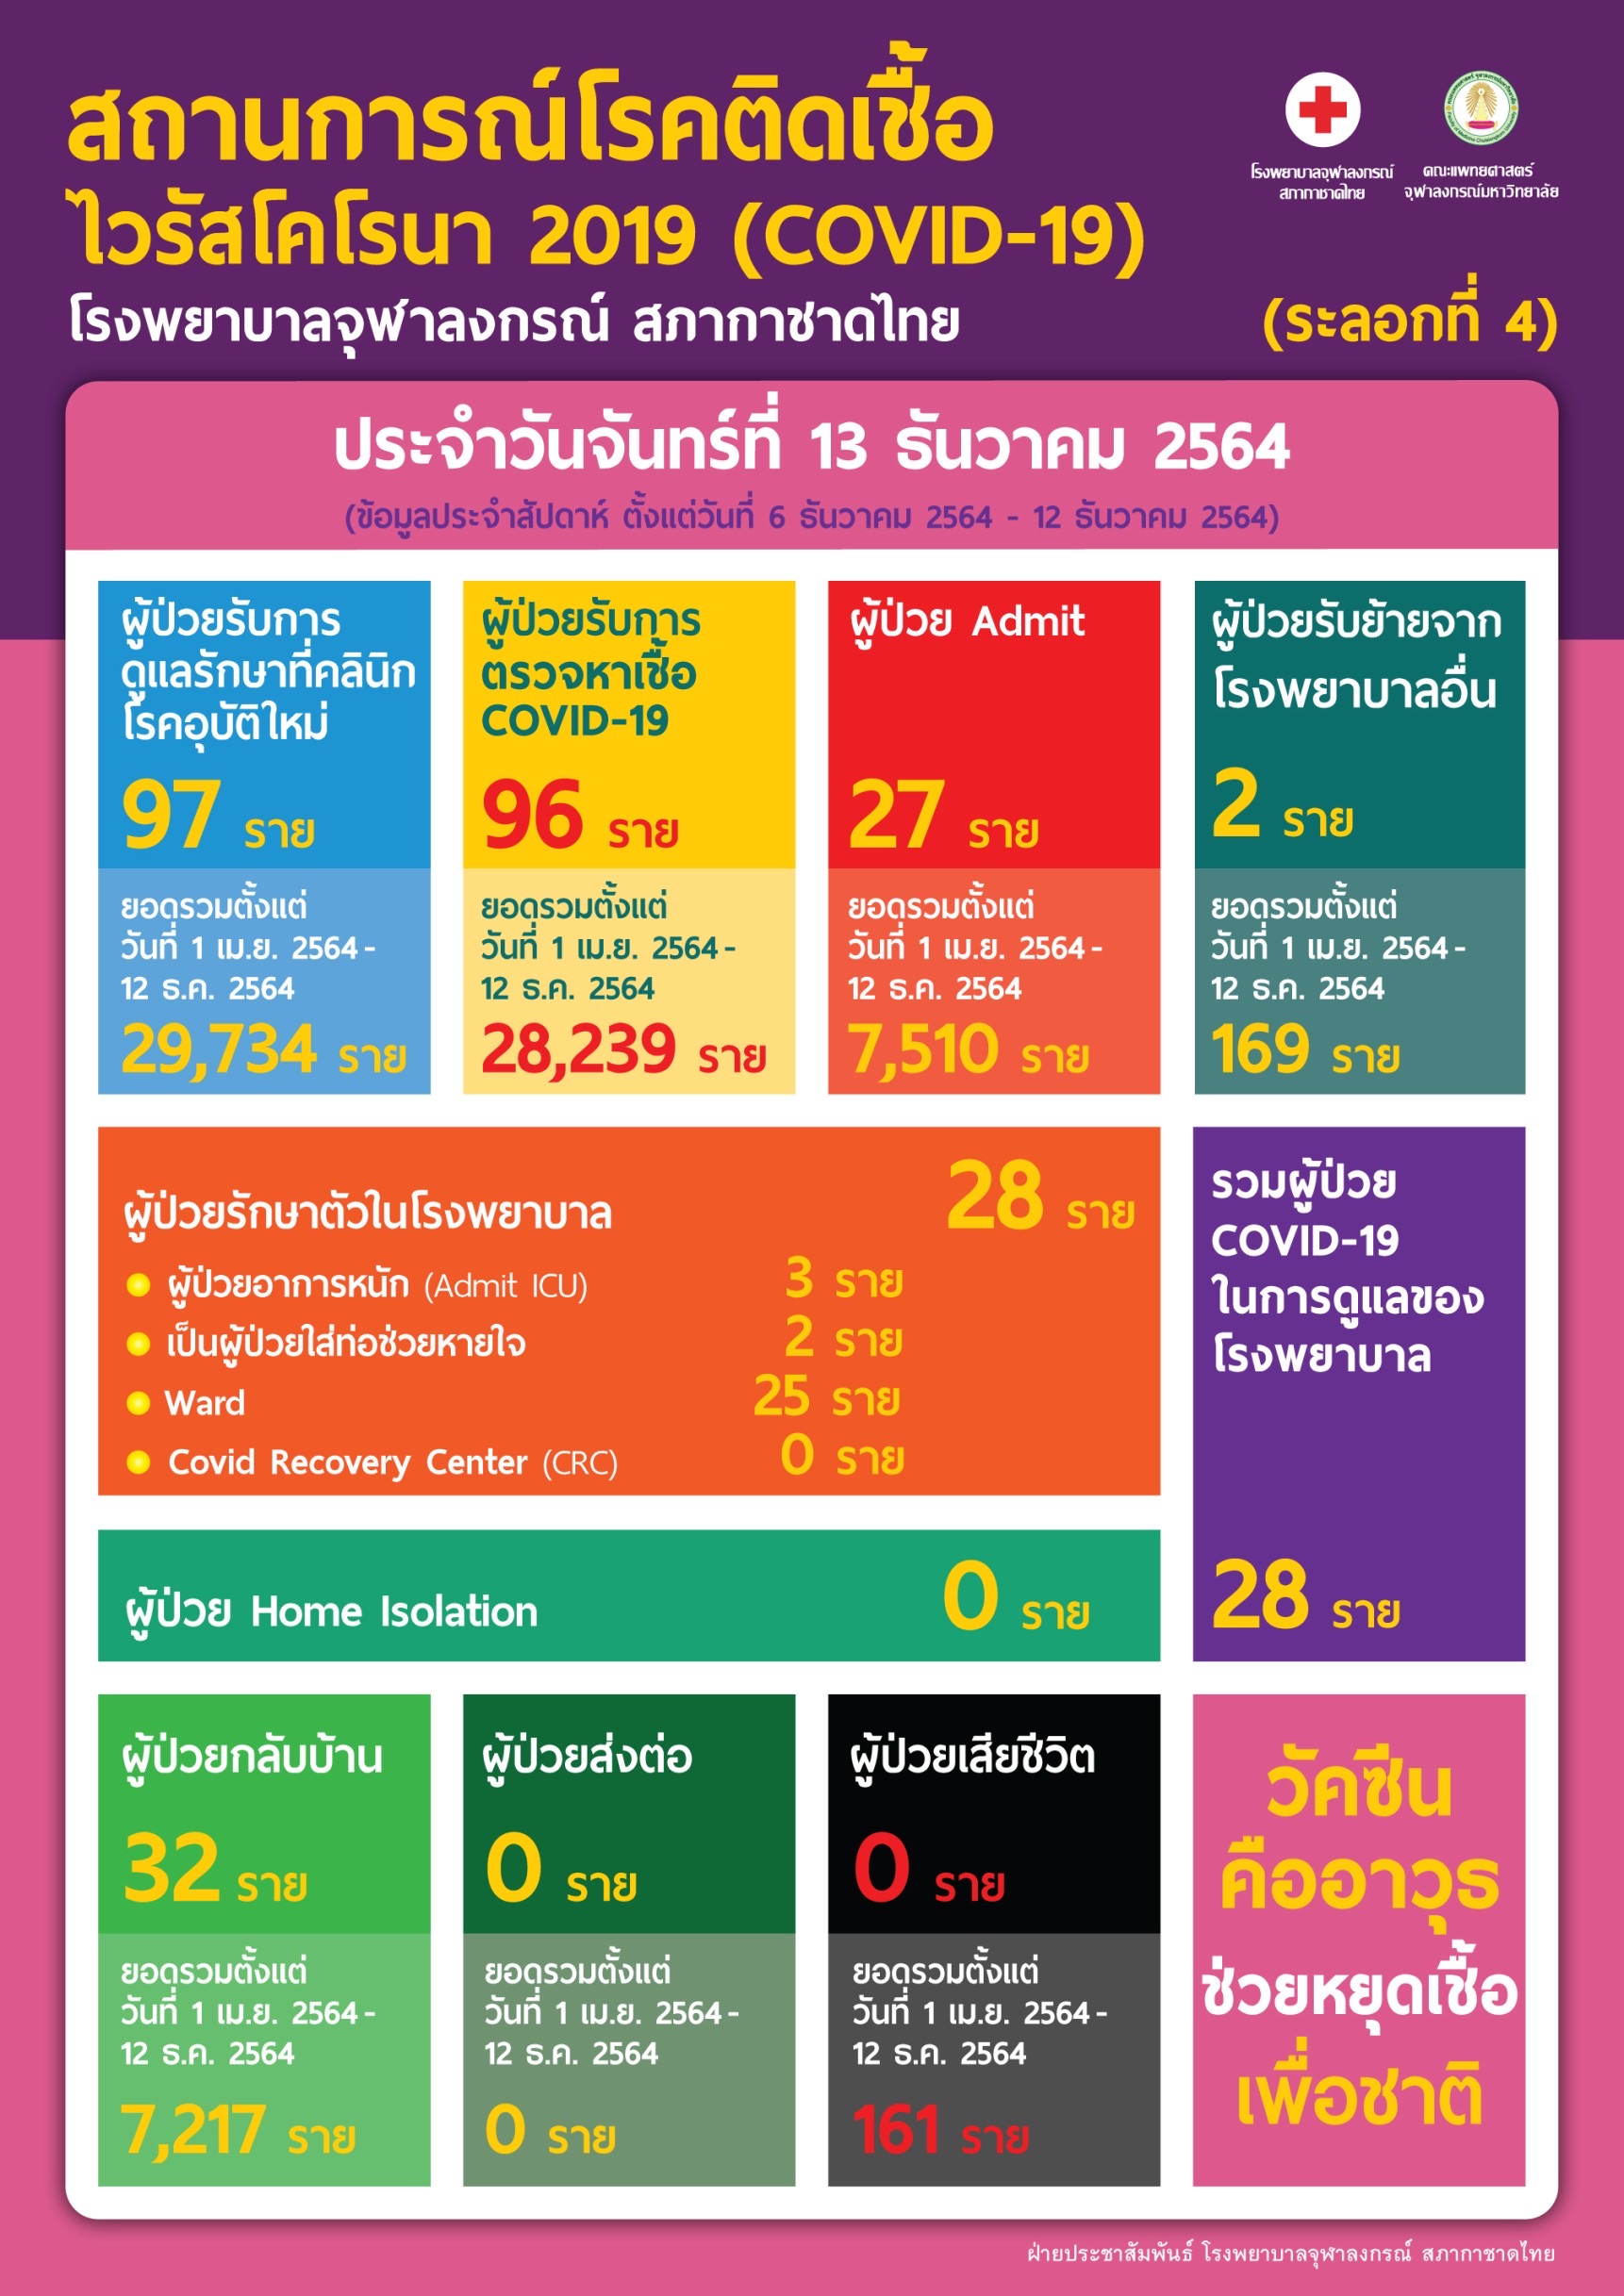 สถานการณ์โรคติดเชื้อไวรัสโคโรนา 2019 (COVID-19) (ระลอกที่ 4) โรงพยาบาลจุฬาลงกรณ์ สภากาชาดไทยประจำวันจันทร์ที่ 13 ธันวาคม 2564